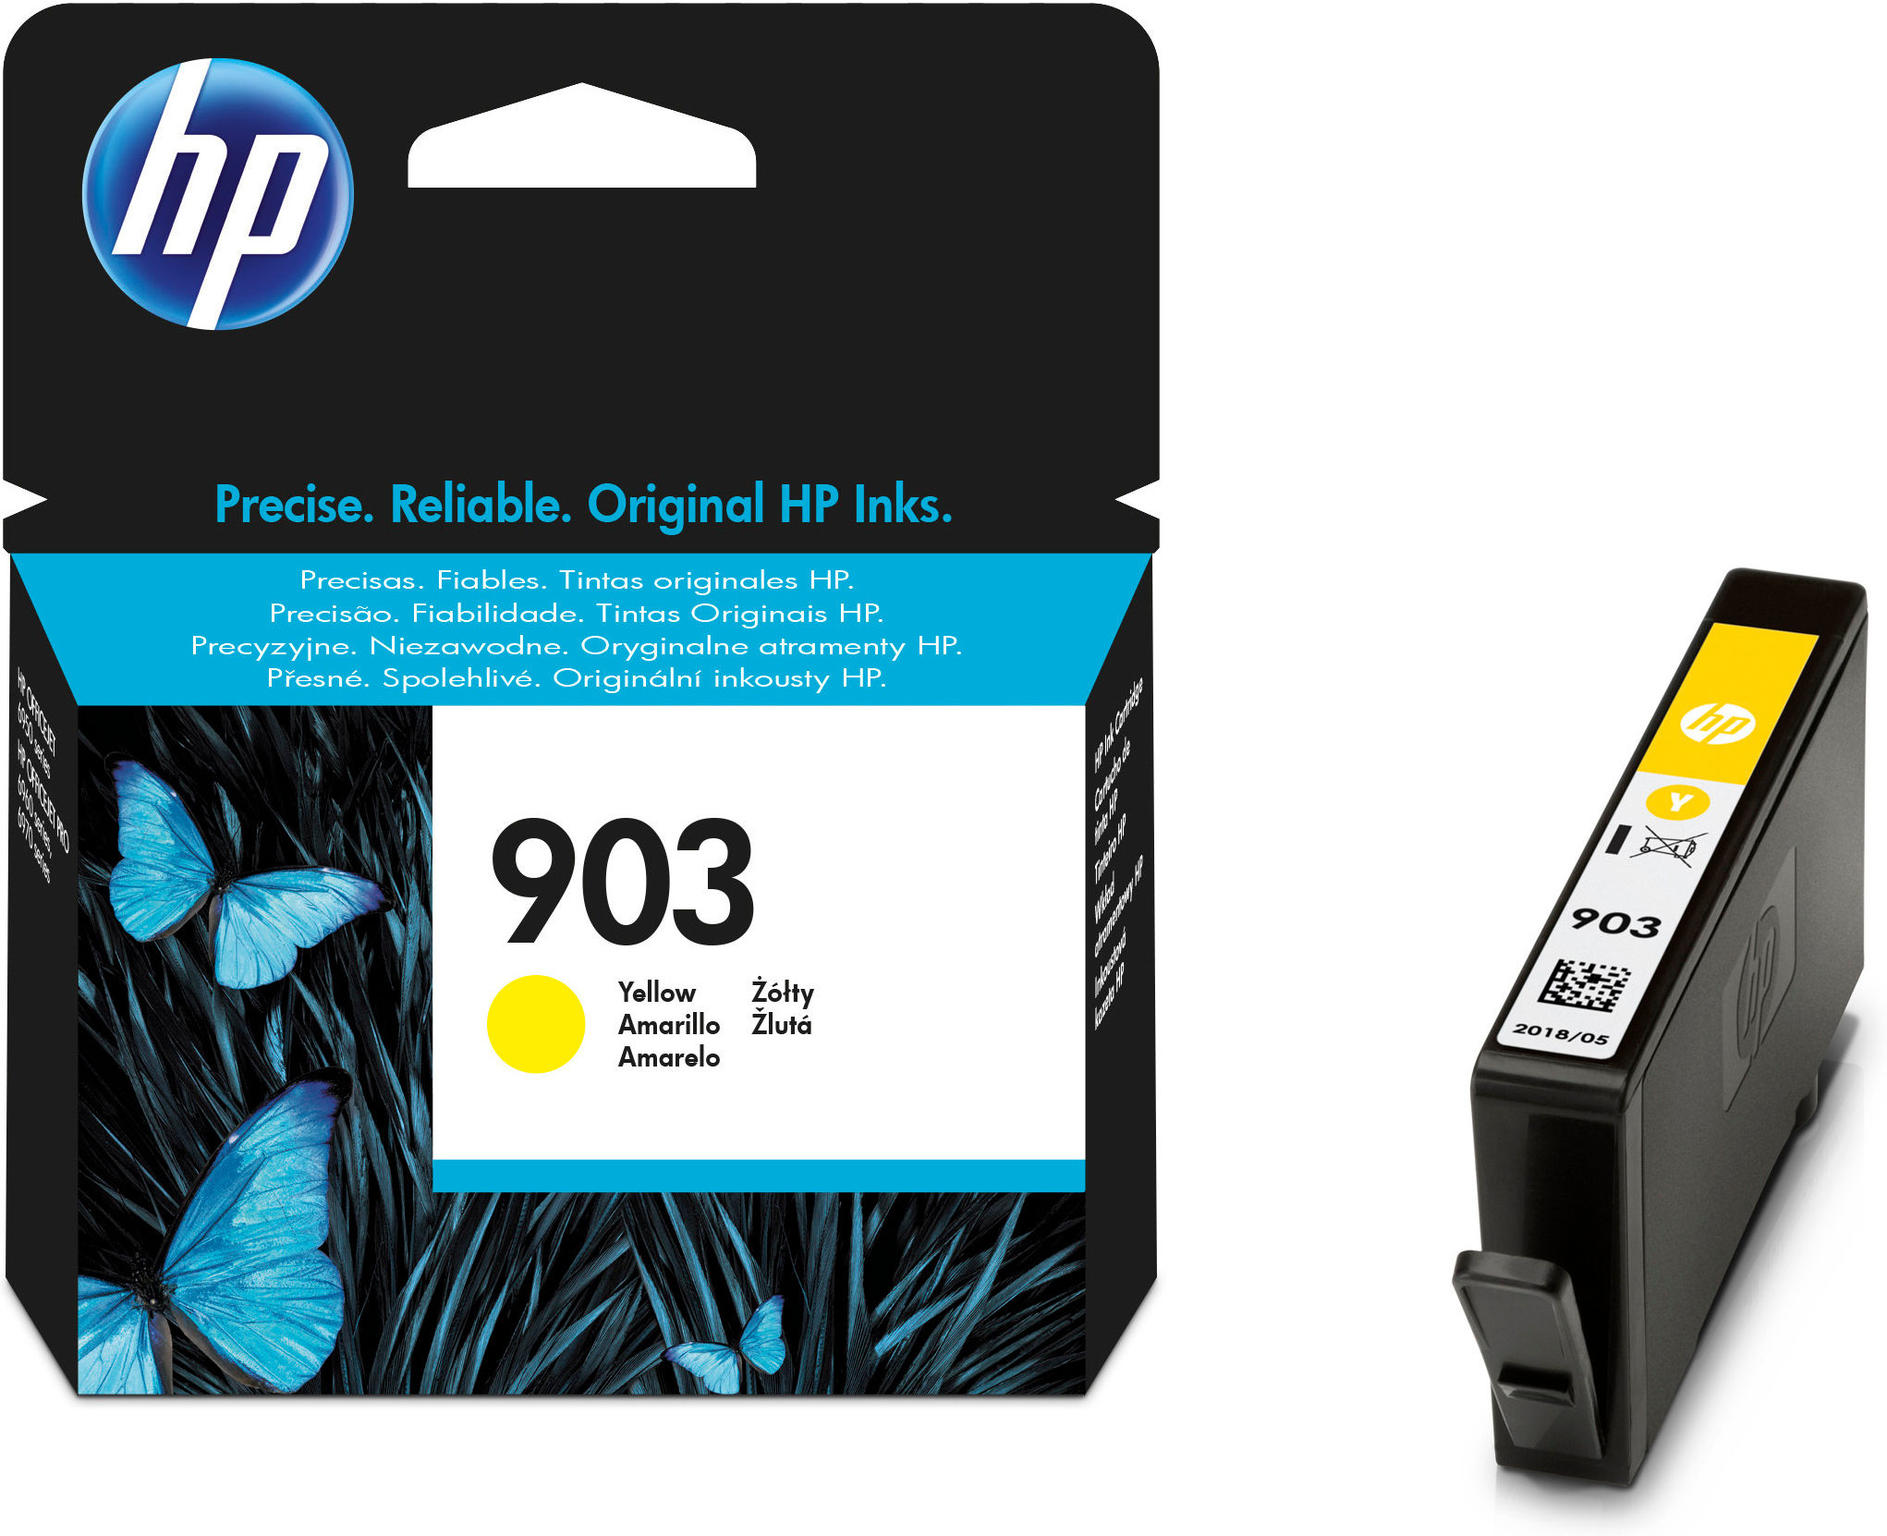 HP 903 Yellow Ink Cartridge